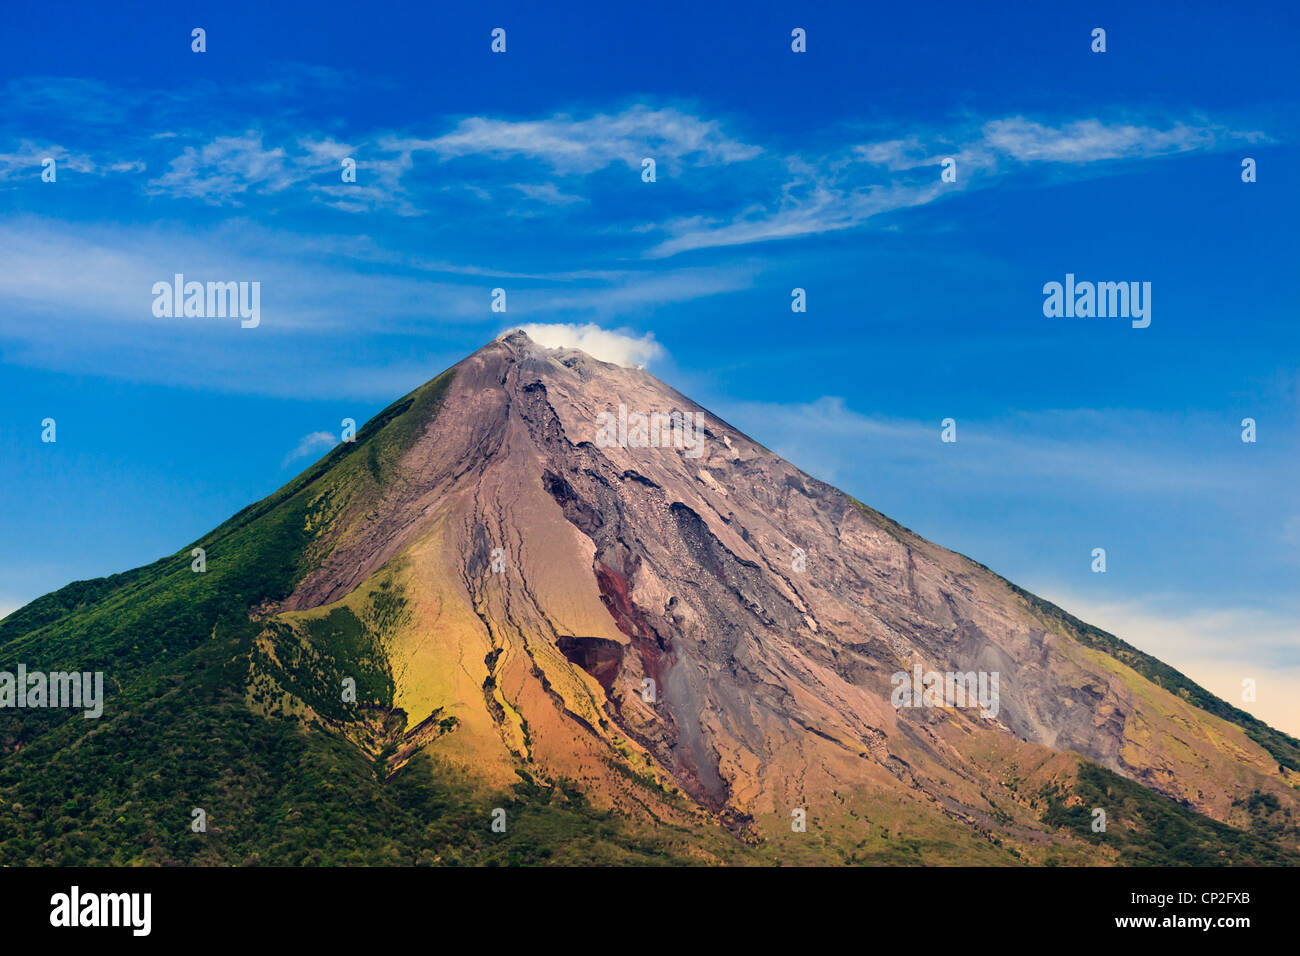 Nicaragua ometepe, : vue de conception active volcano en couleurs, de dépôts de cendres et de pistes vertes. Banque D'Images